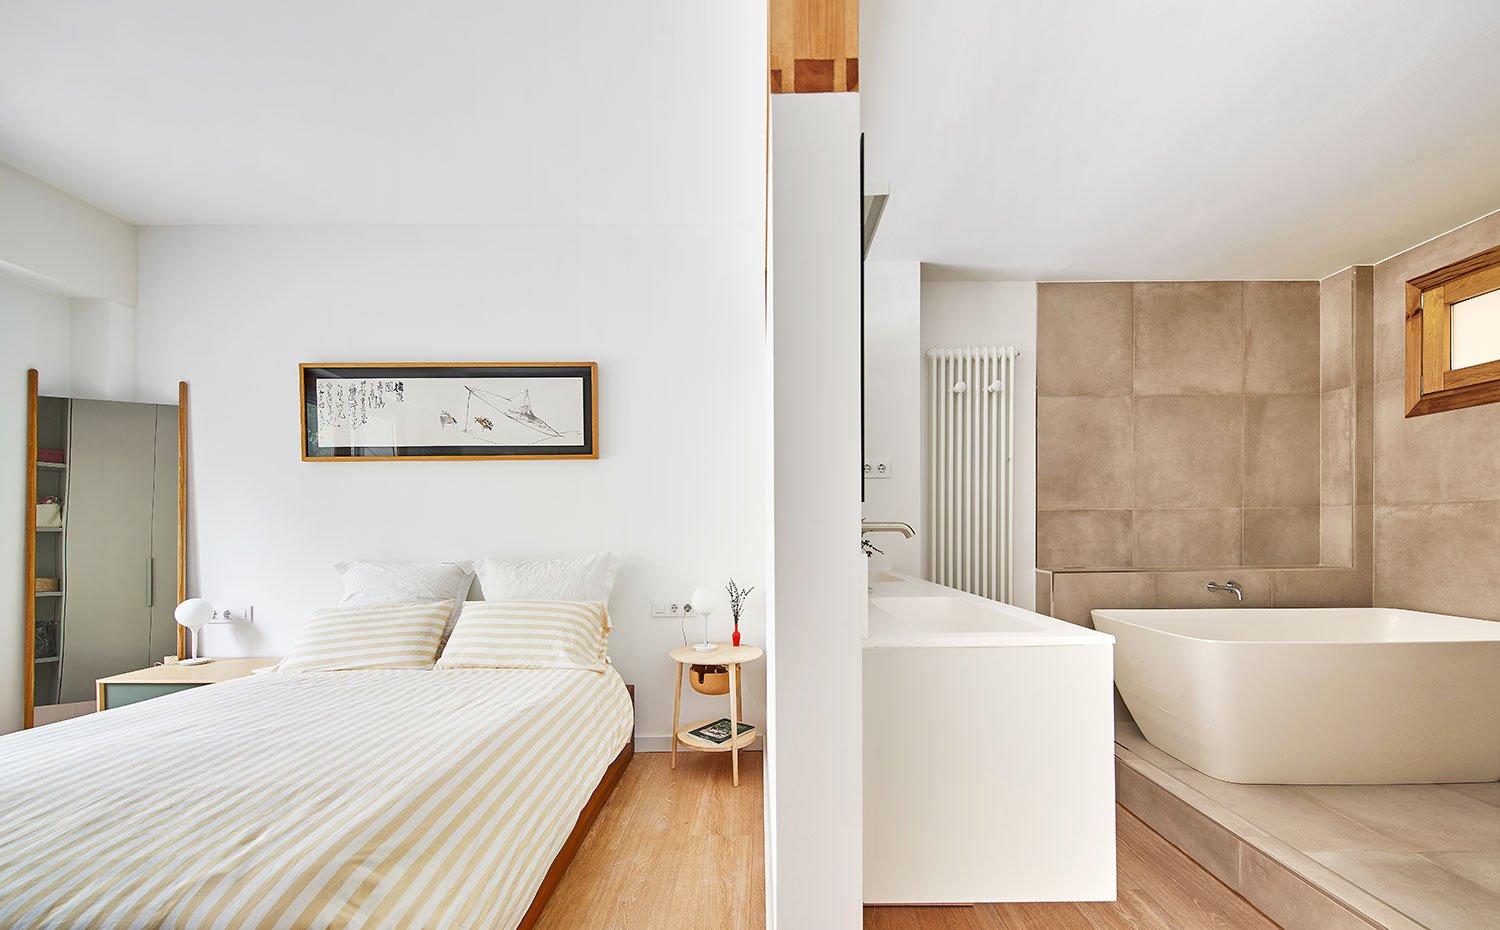 Dormitorio con tabique divisorio con cuarto de baño provisto de bañera exenta sobre revestimiento en color piedra